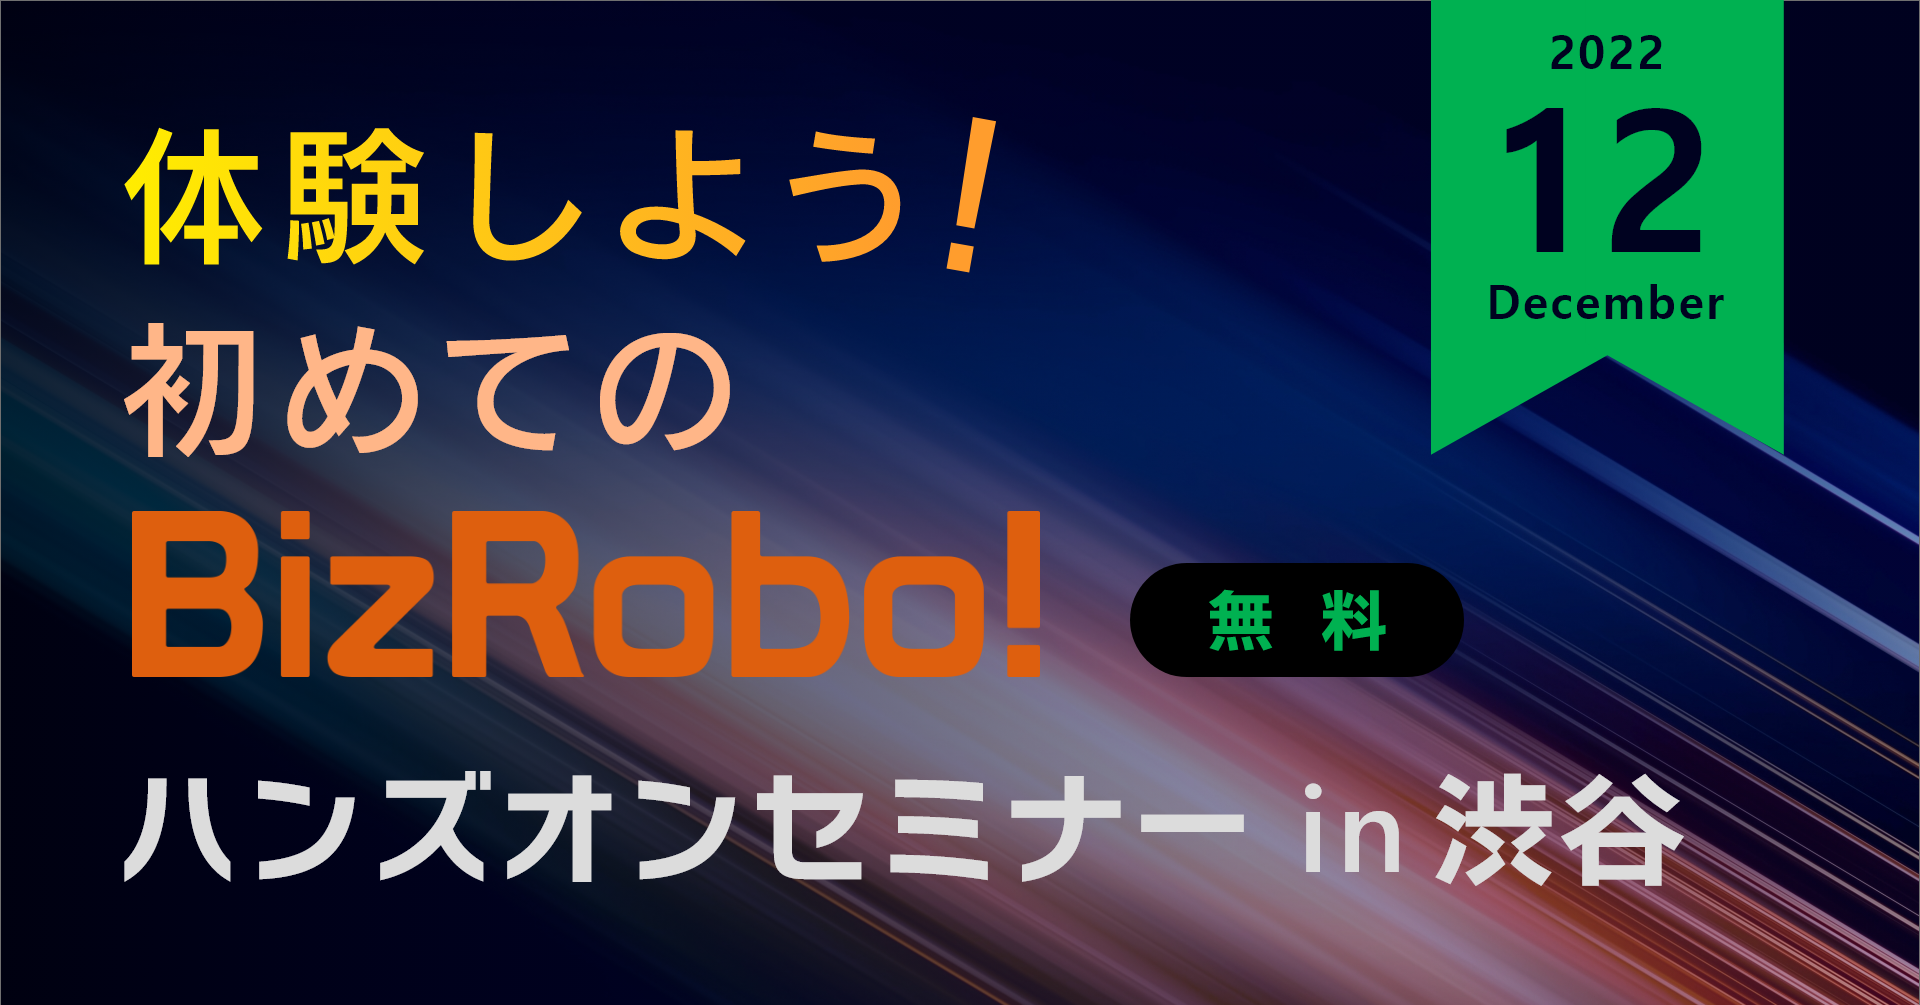 体験しよう！初めてのBizRobo! ハンズオンセミナー in 渋谷【12月】